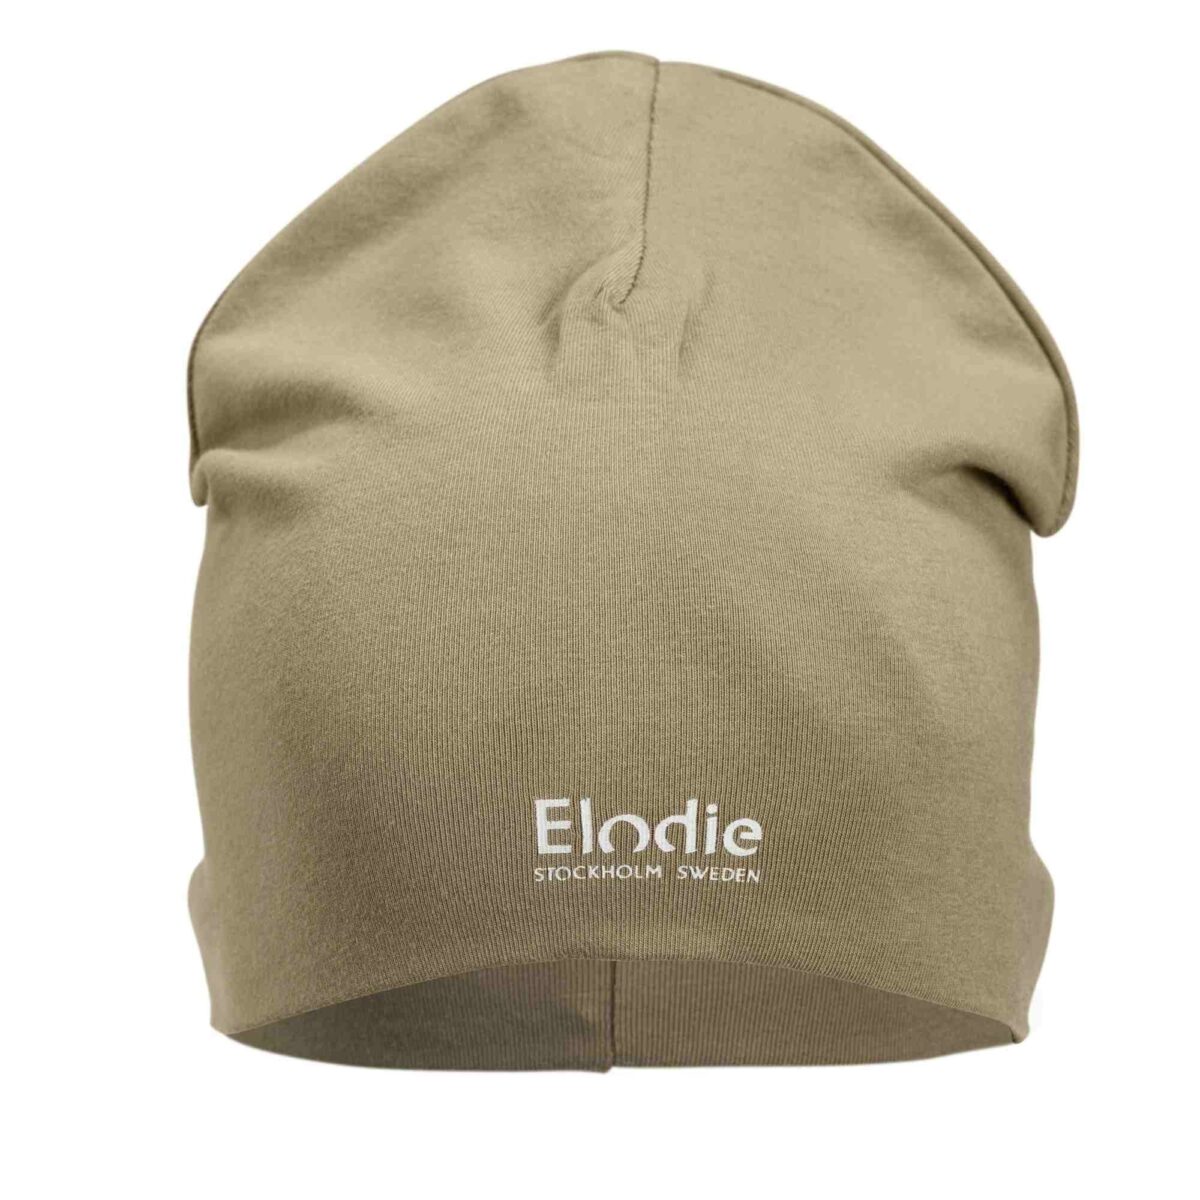 Elodie Details - Logo Beanie - Warm Sand 1-2 Years - Ubrania I Akcesoria &Gt; Ubrania &Gt; Ubrania Dla Dzieci I Niemowląt